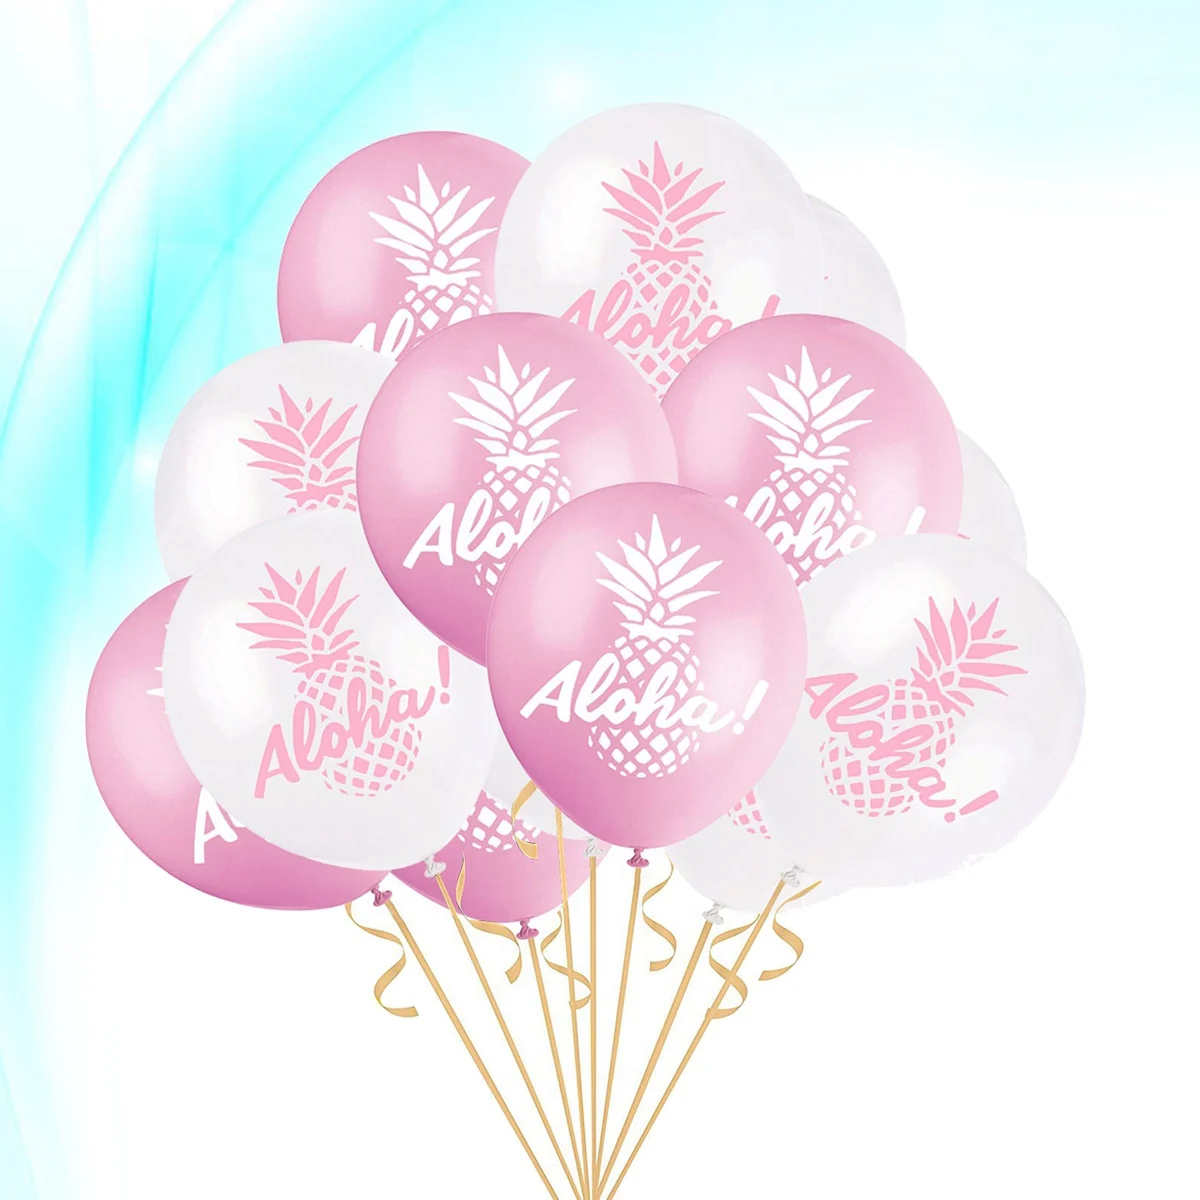 50 шт. с принтом ананаса воздушный шар Aloha Декор латексный шар для гавайвечерние вечеринок фестиваль сбор (12 дюймов, смешанный цвет)